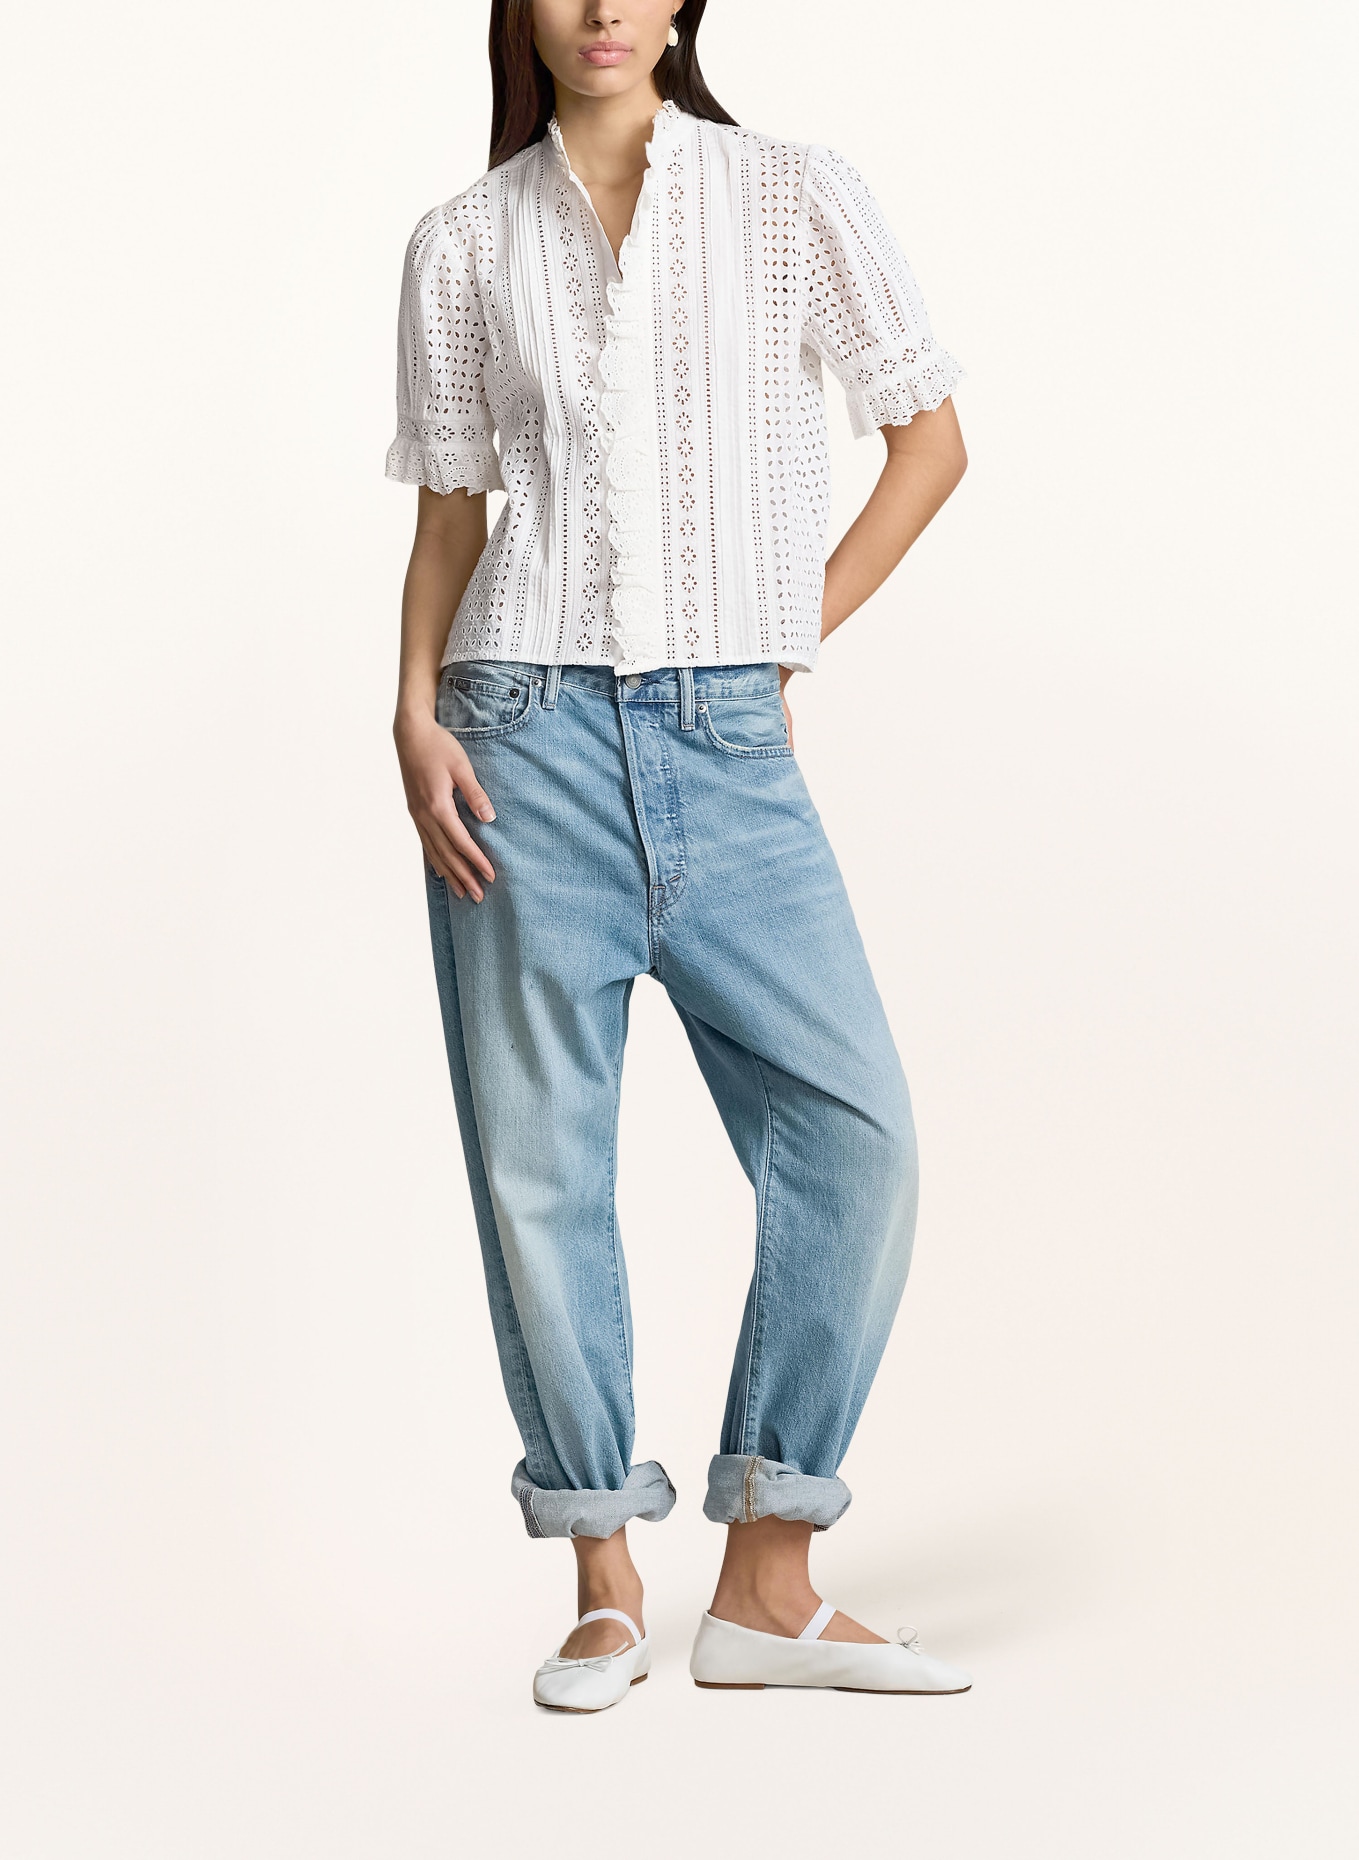 POLO RALPH LAUREN Lace blouse, Color: WHITE (Image 2)